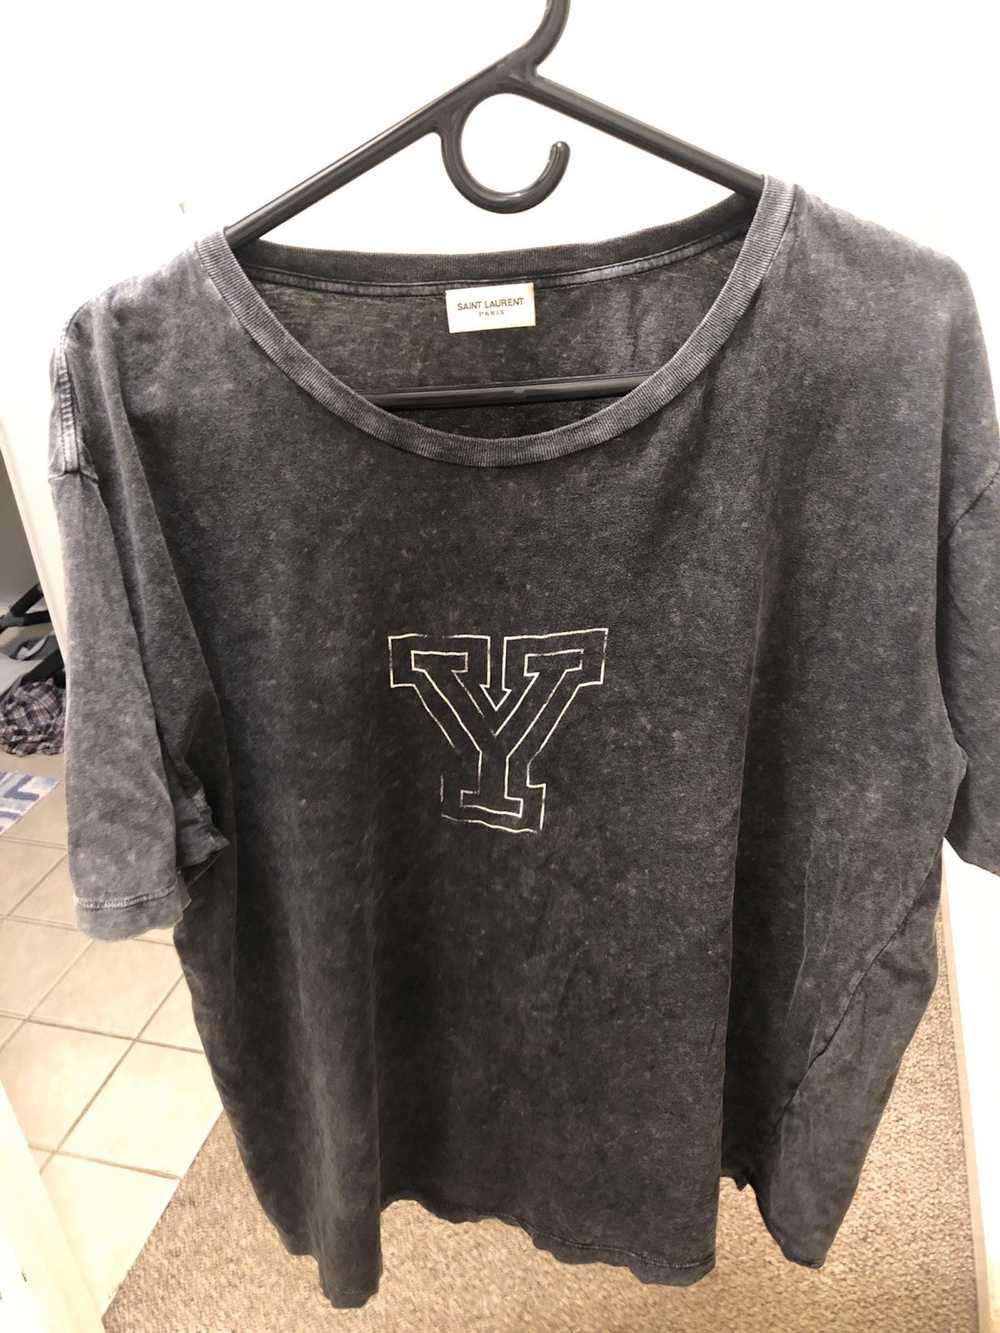 Saint Laurent Paris Yale shirt - image 1